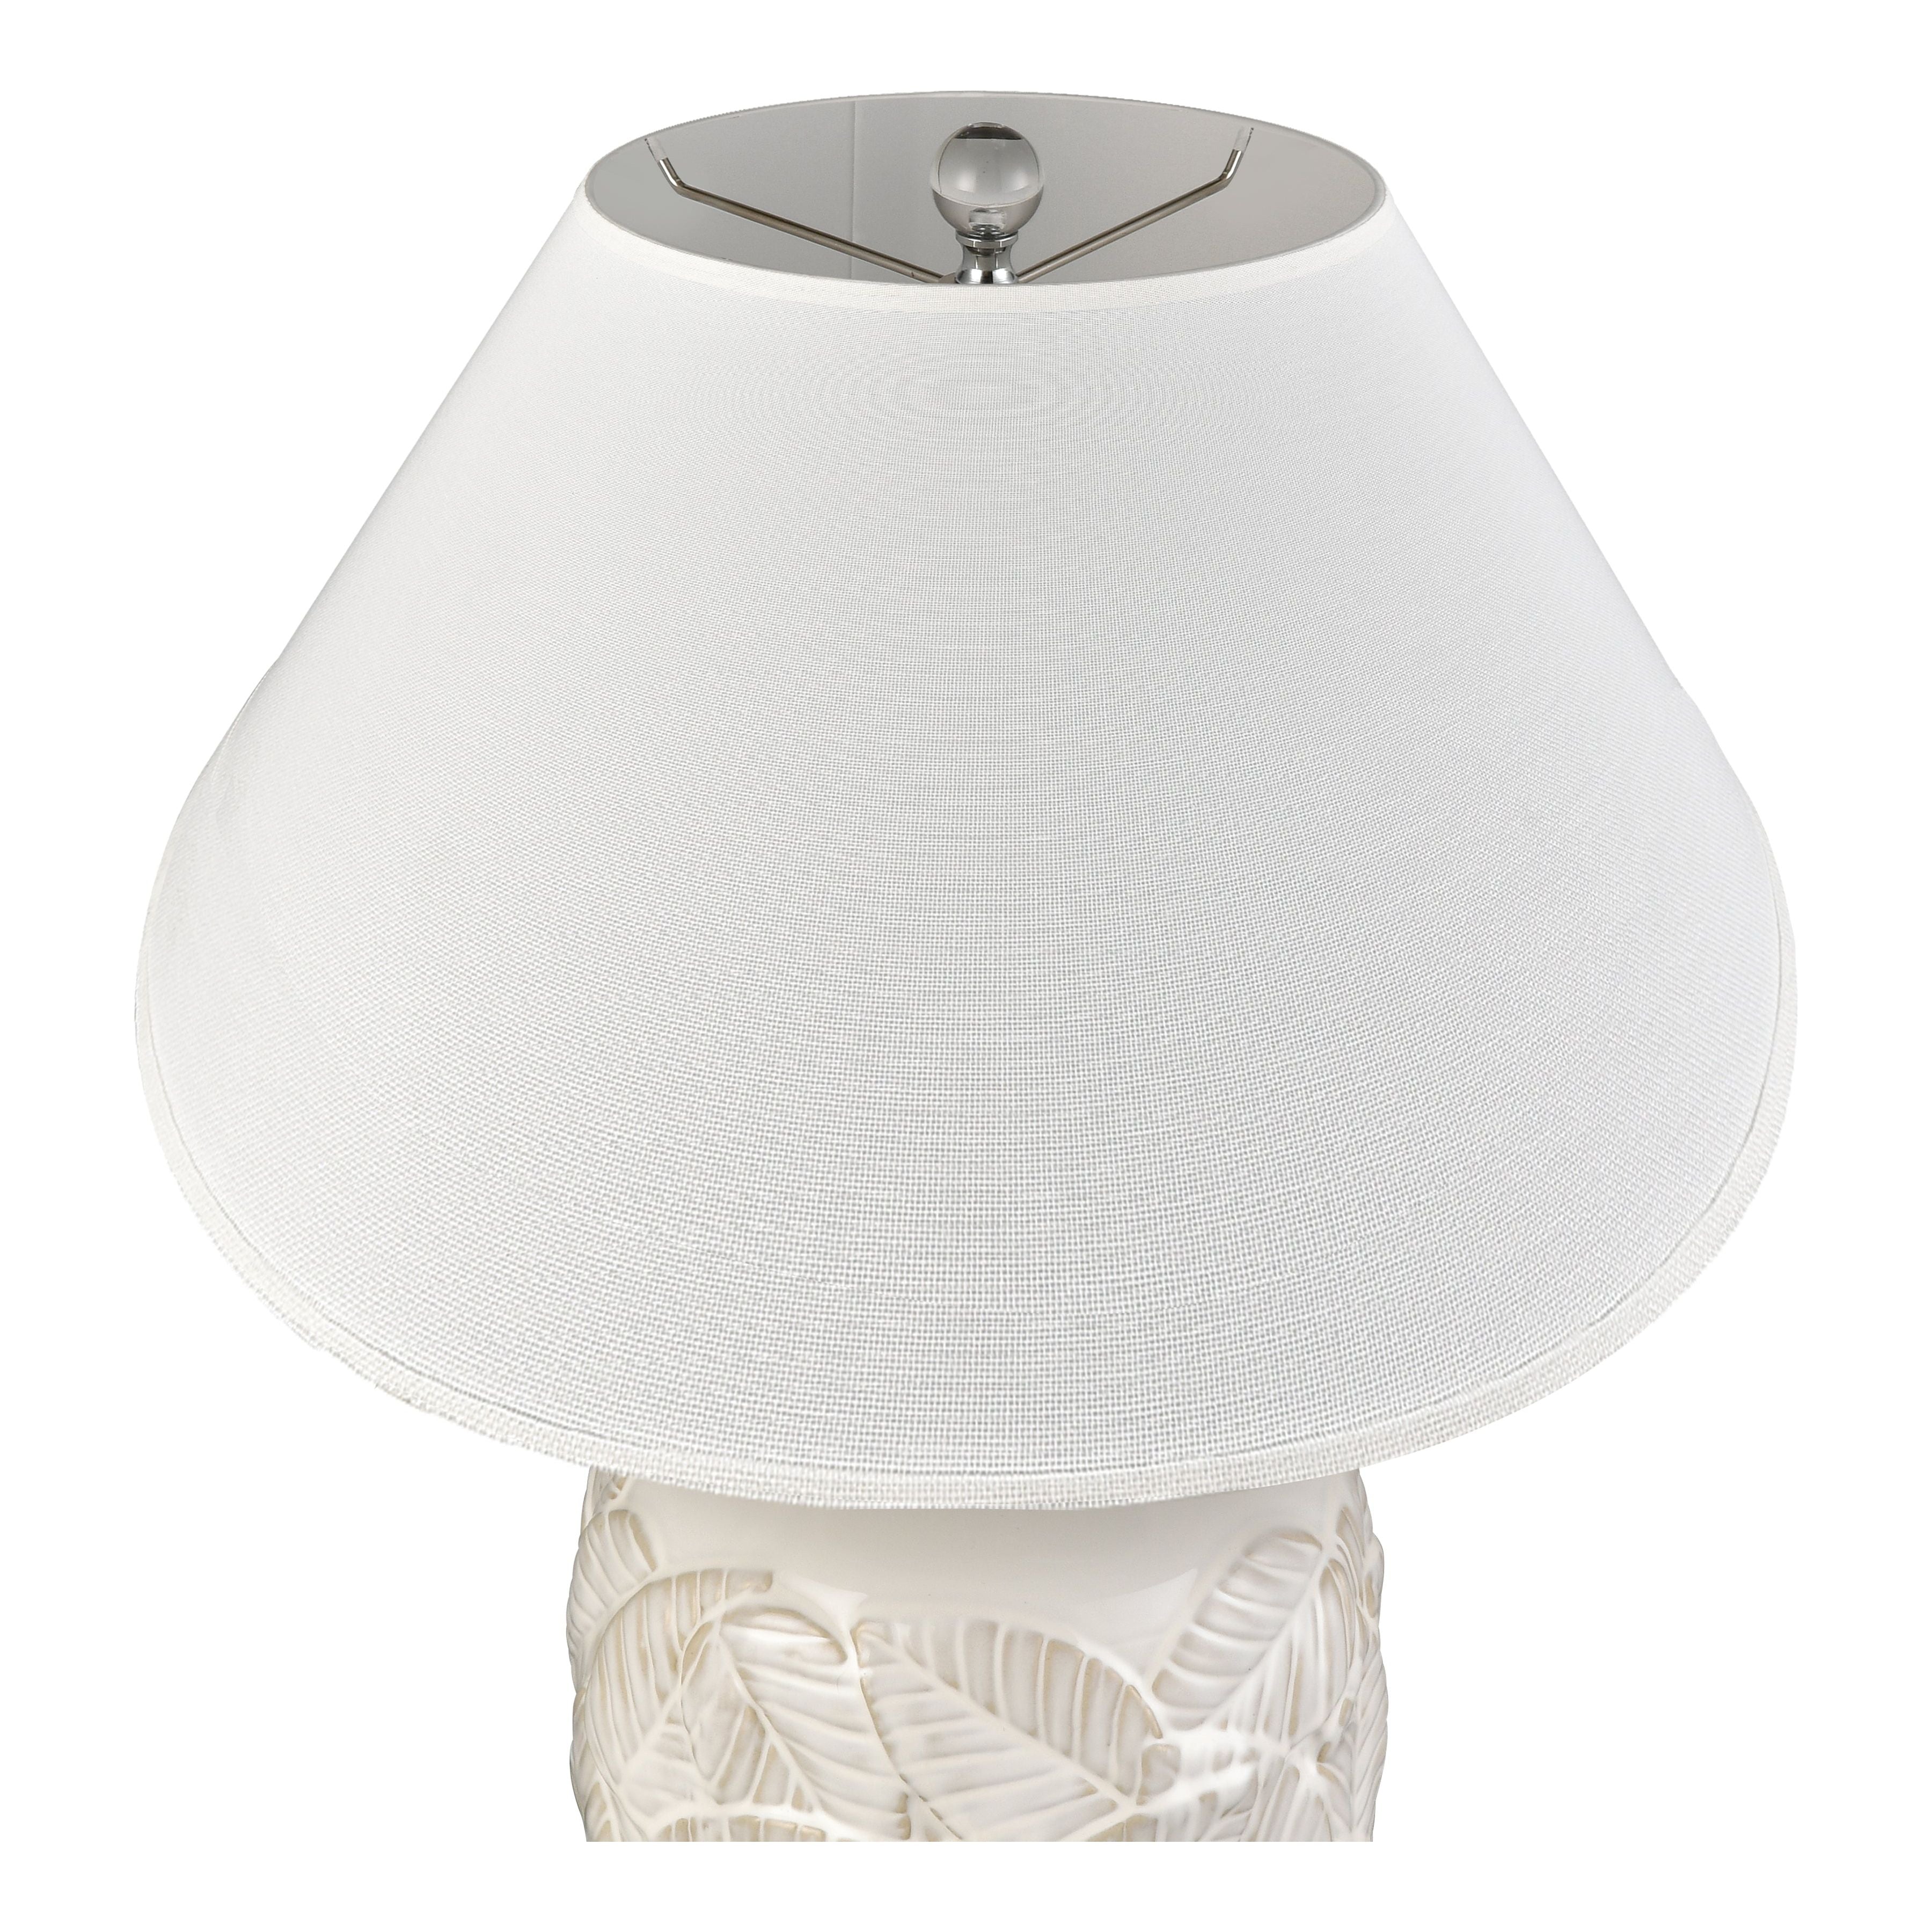 Goodell 27.5" High 1-Light Table Lamp